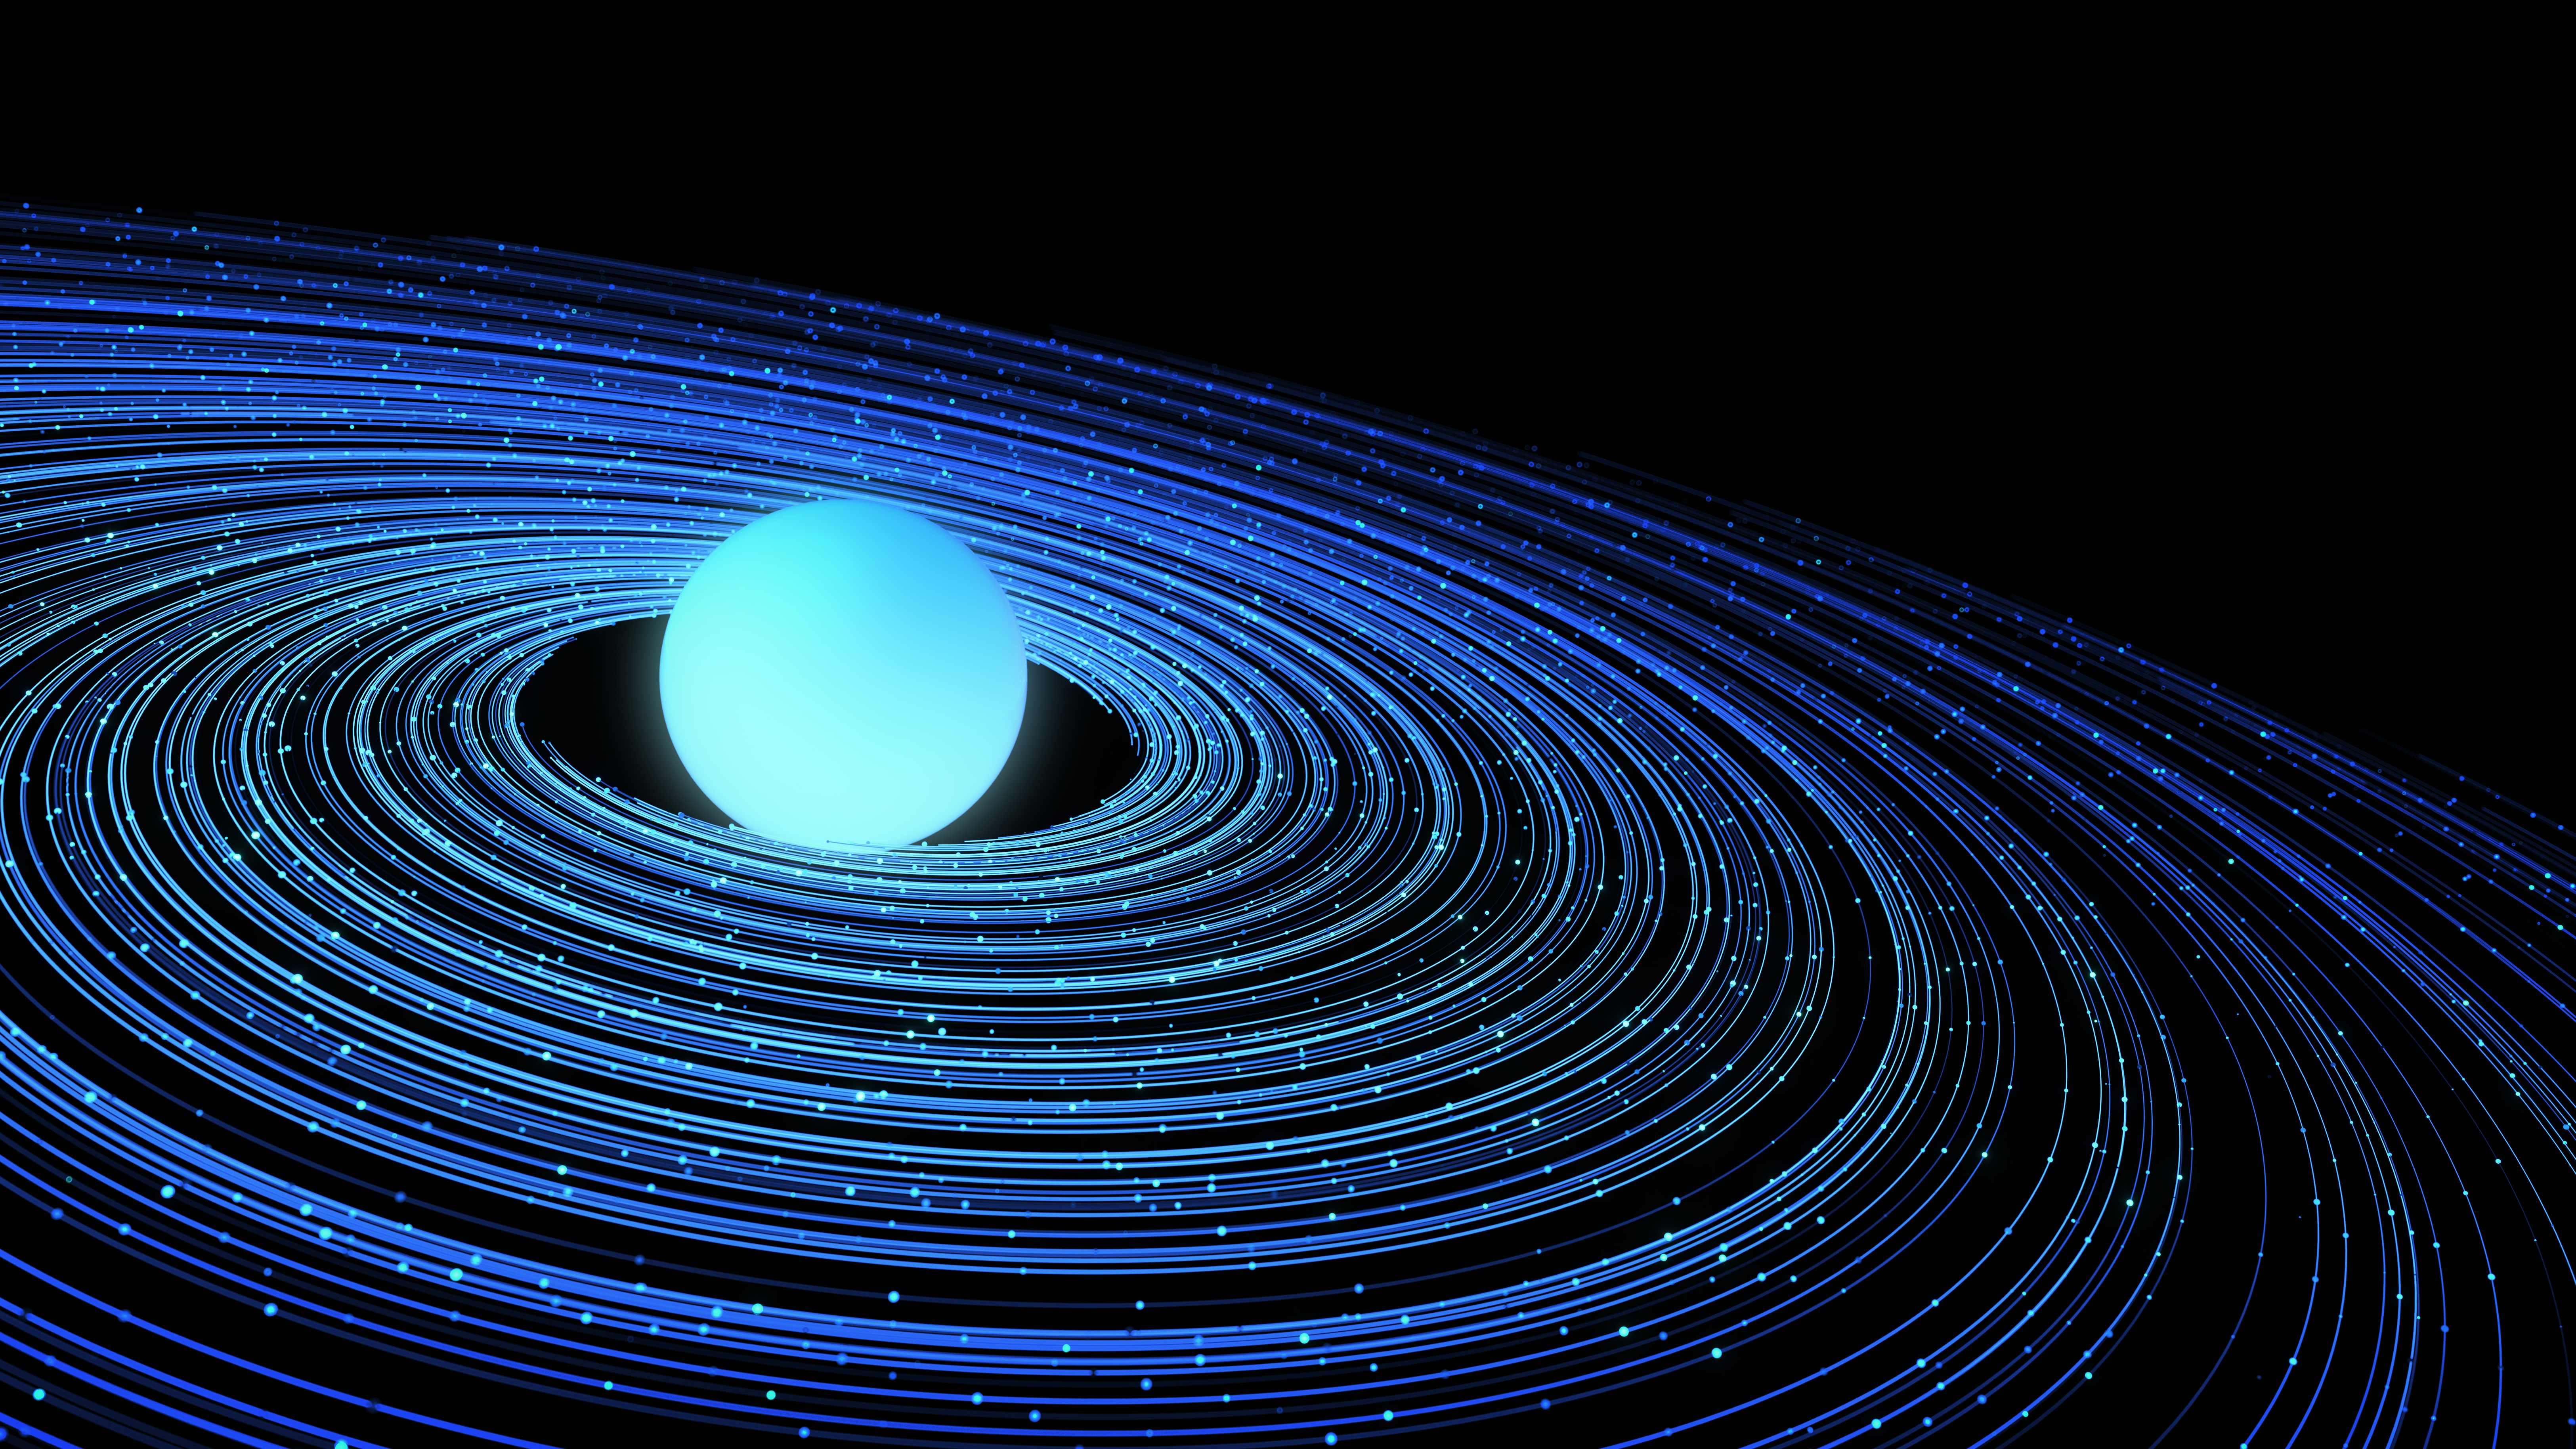 토성과 비슷한 모양의 고리로 둘러싸인 빛나는 네온 블루색 공